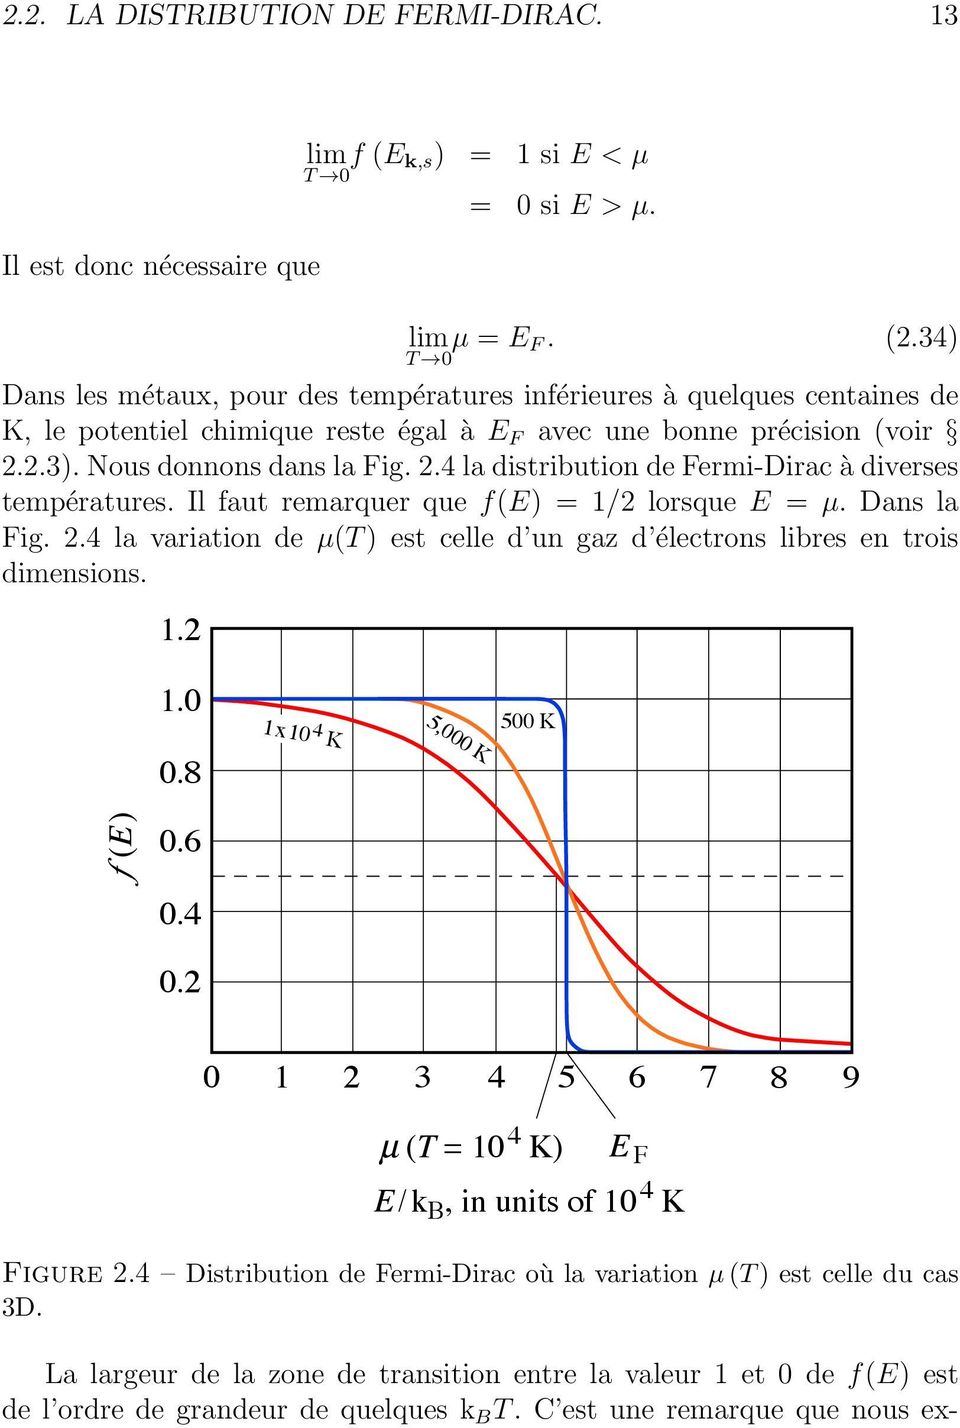 2.3). Nous donnons dans la Fig. 2.4 la distribution de Fermi-Dirac à diverses températures. Il faut remarquer que f(e) = 1/2 lorsque E = µ. Dans la Fig. 2.4 la variation de µ(t ) est celle d un gaz d électrons libres en trois dimensions.